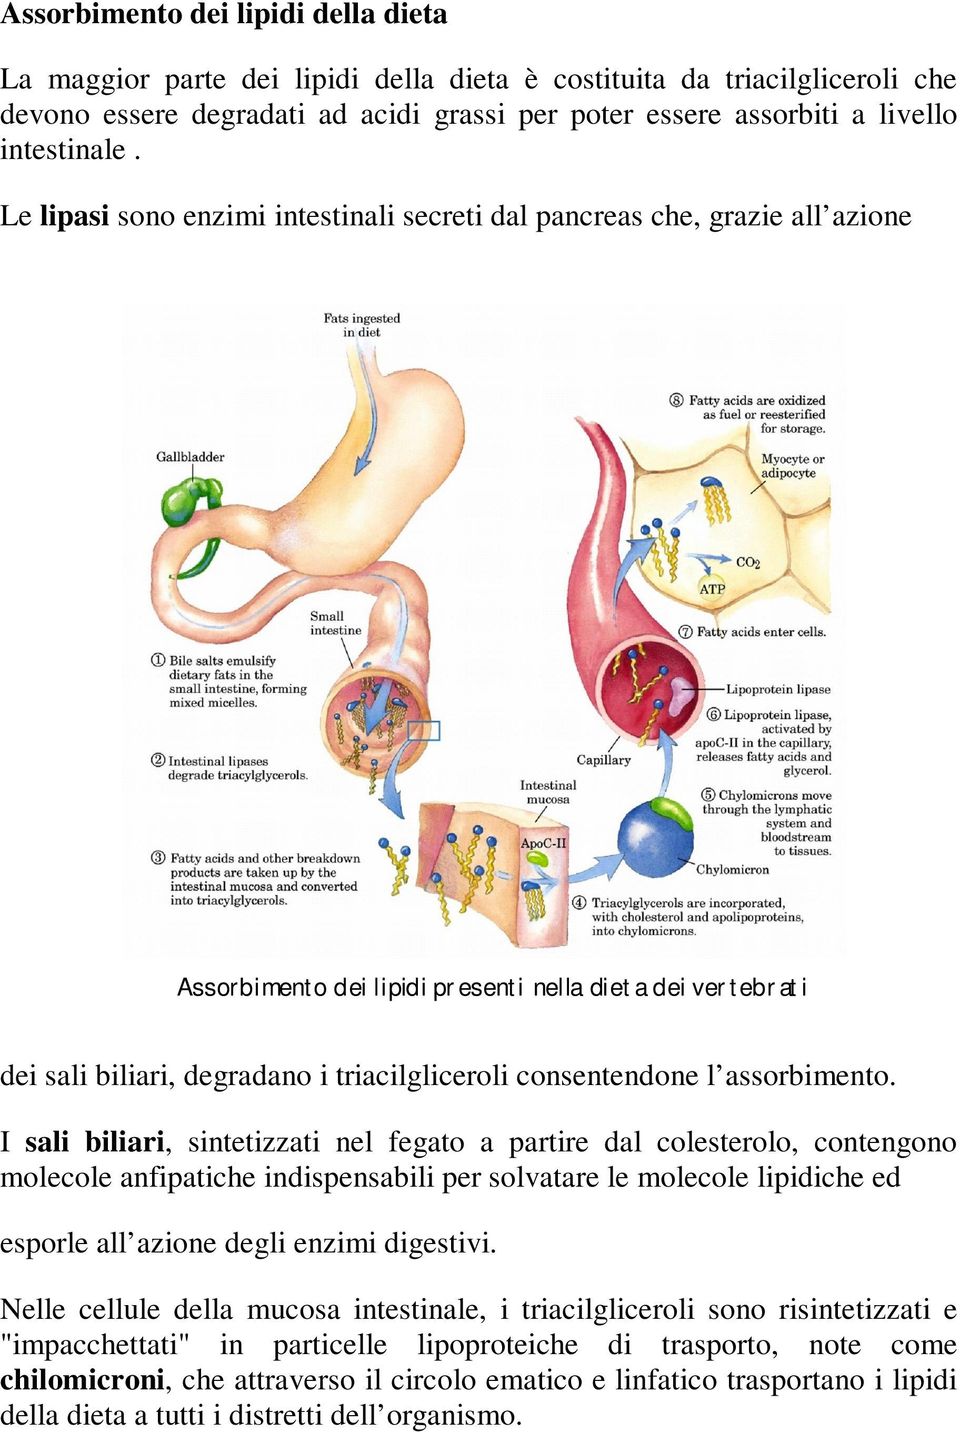 Le lipasi sono enzimi intestinali secreti dal pancreas che, grazie all azione Assorbimento dei lipidi presenti nella dieta dei vertebrati dei sali biliari, degradano i triacilgliceroli consentendone